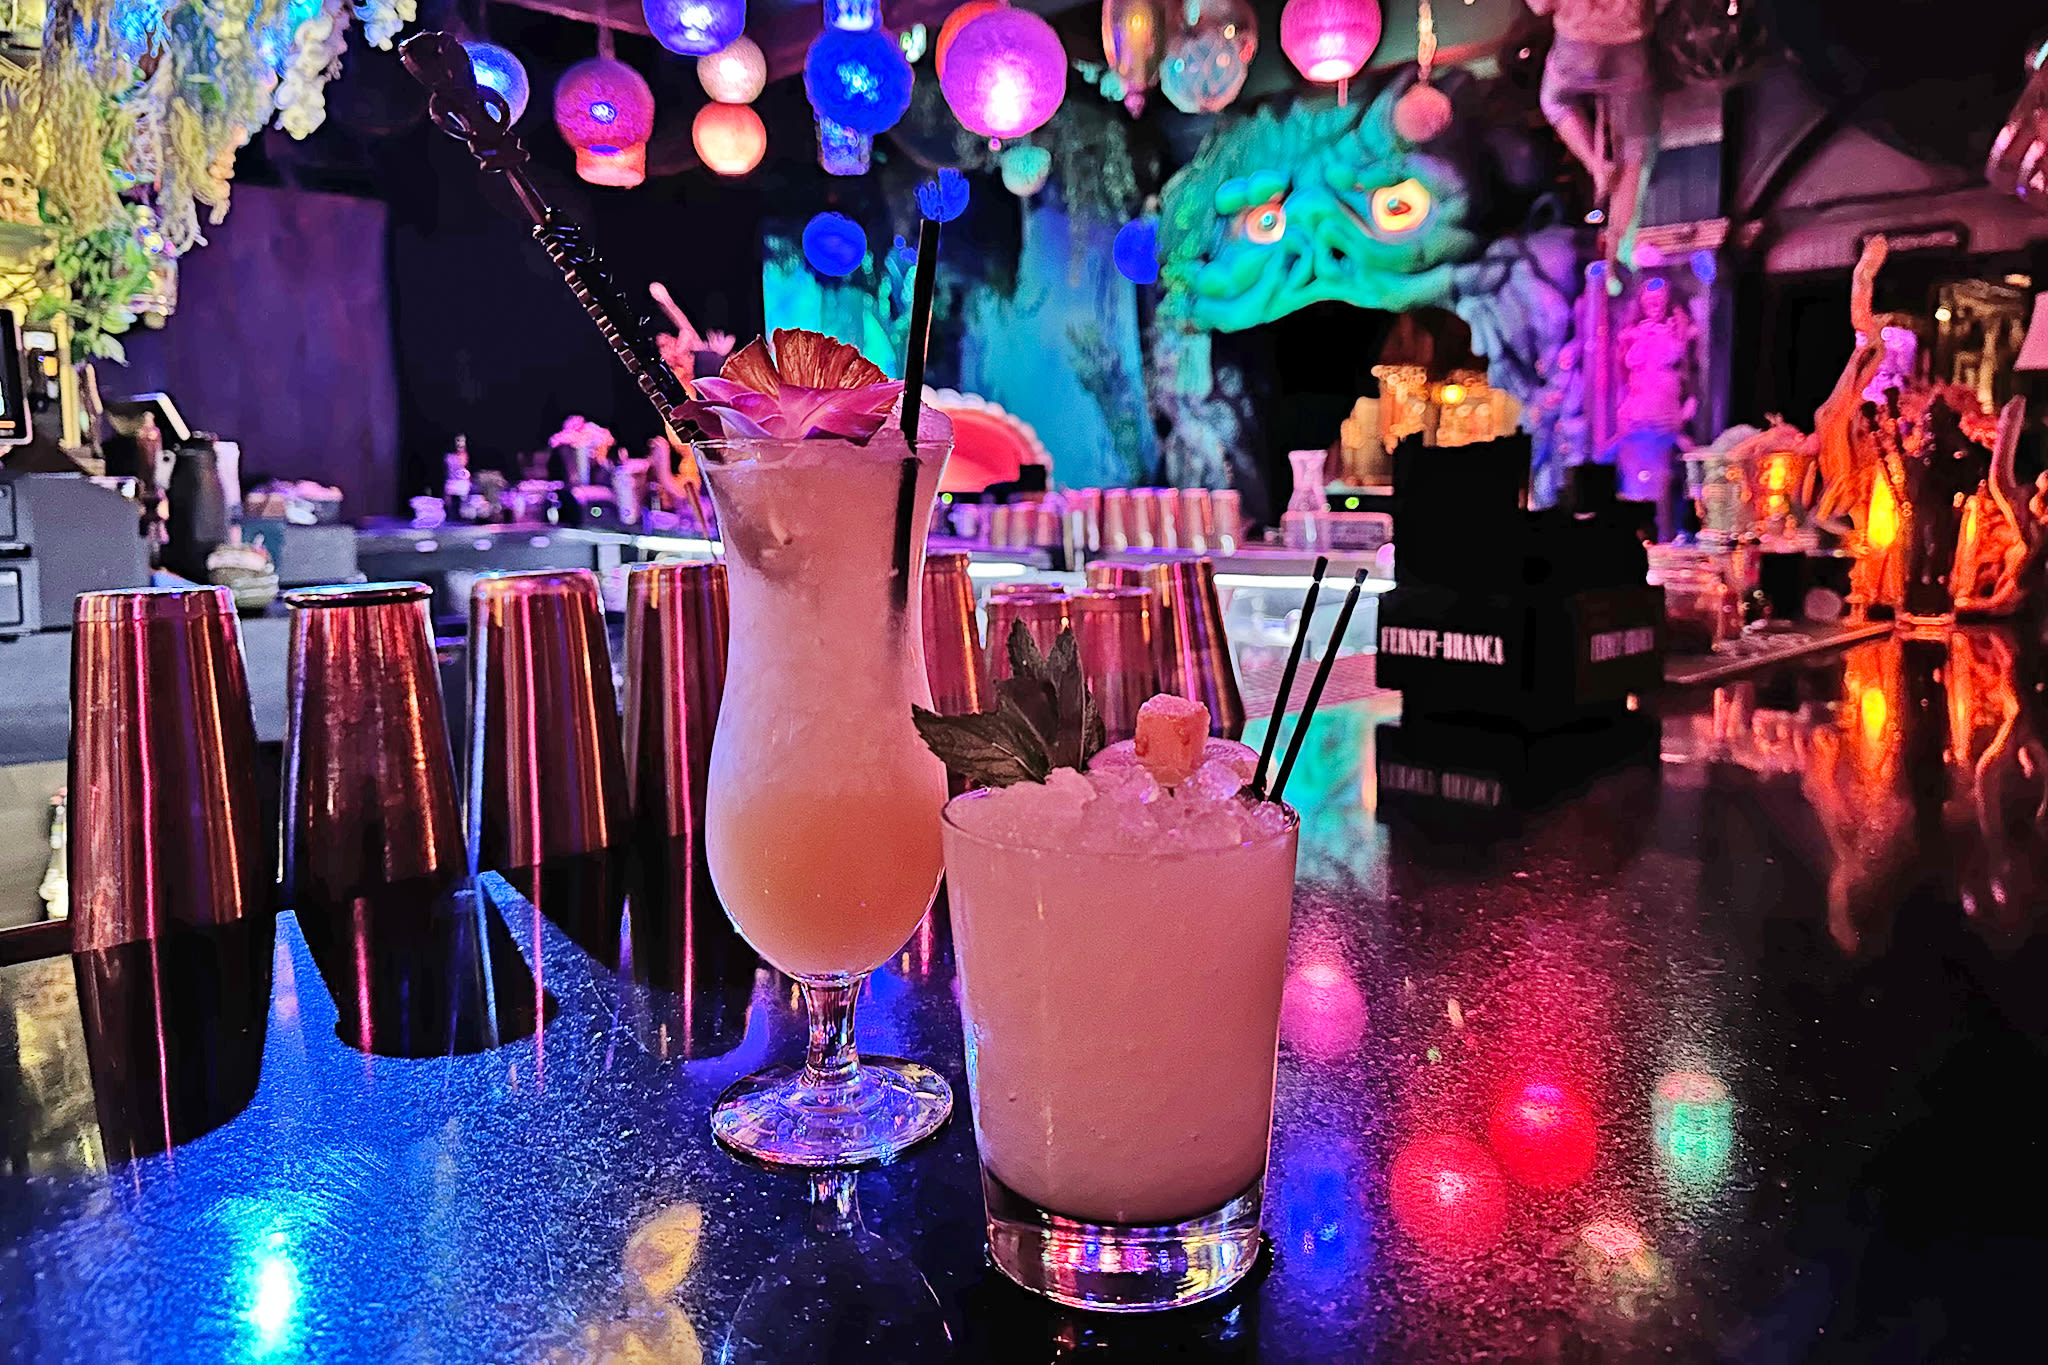 This Vegas locals' favorite bar is an NSFW version of Disneyland